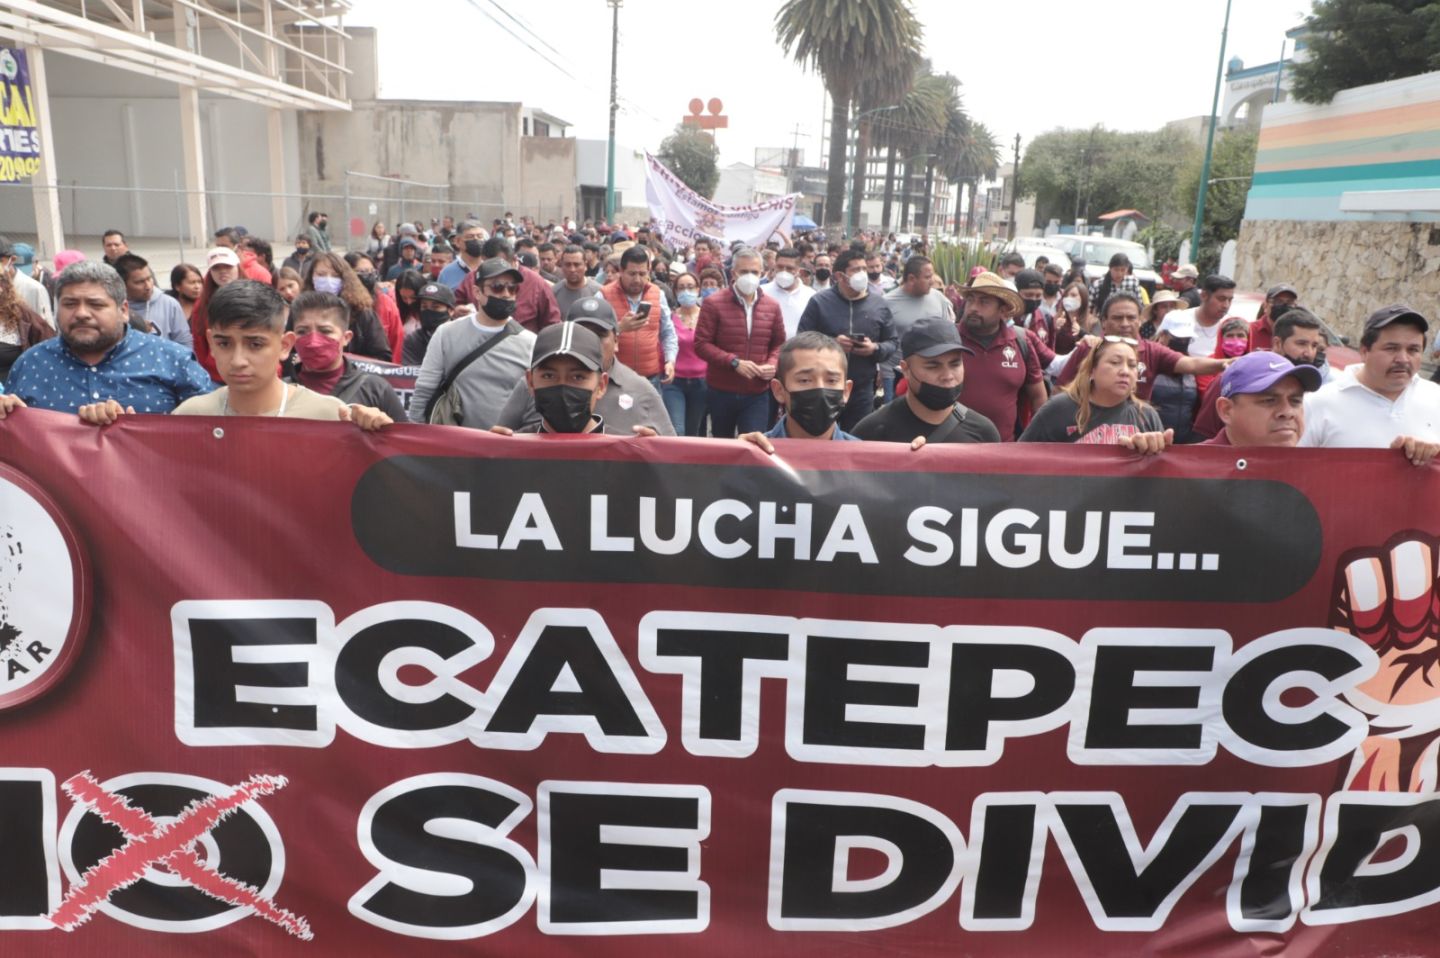 Habitantes de Ecatepec marcharan para defender 469 hectáreas de territorio municipal
